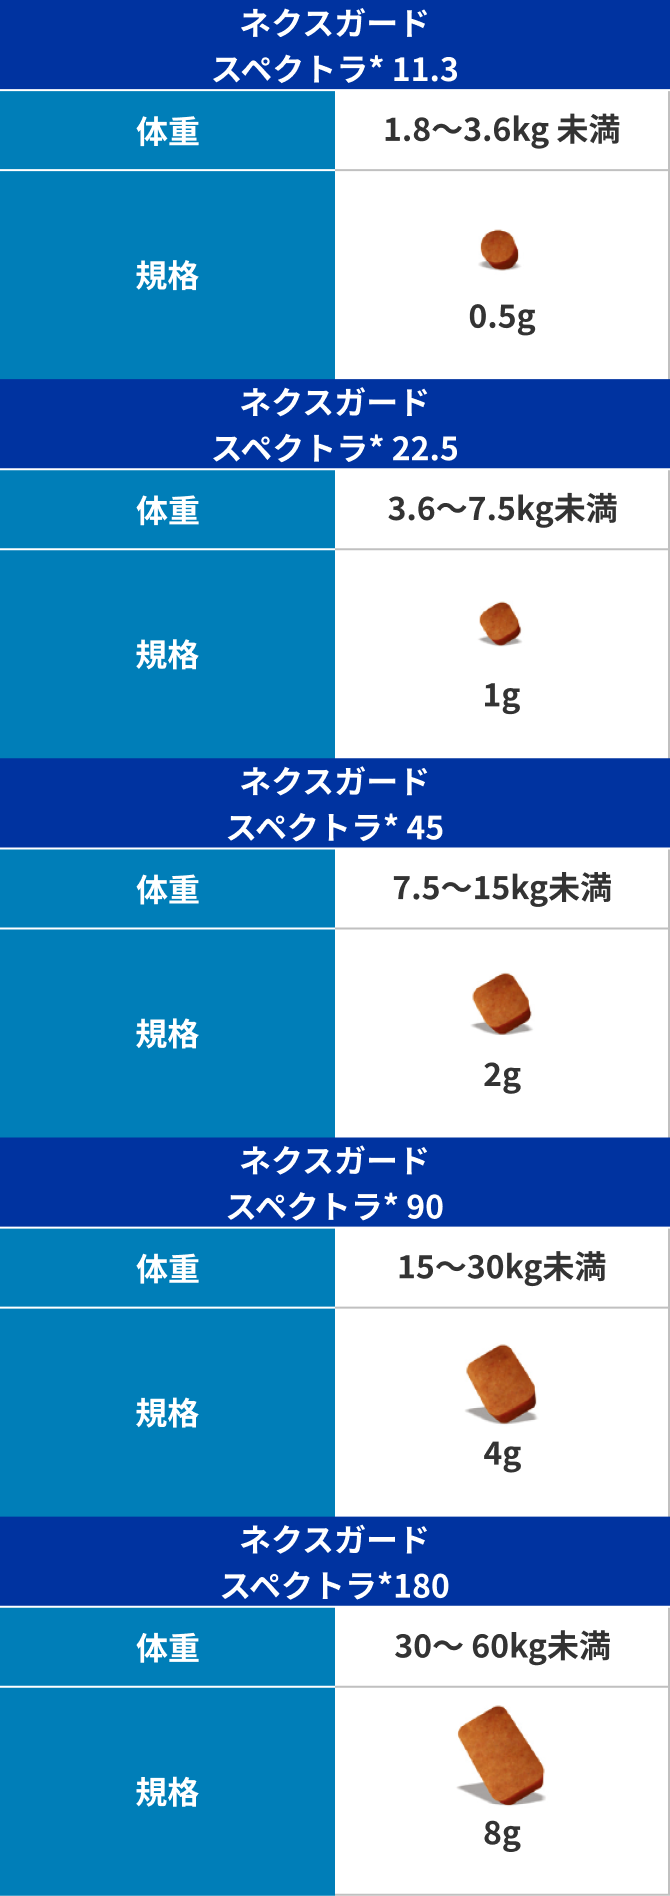 画像:体重別のネクスガード表